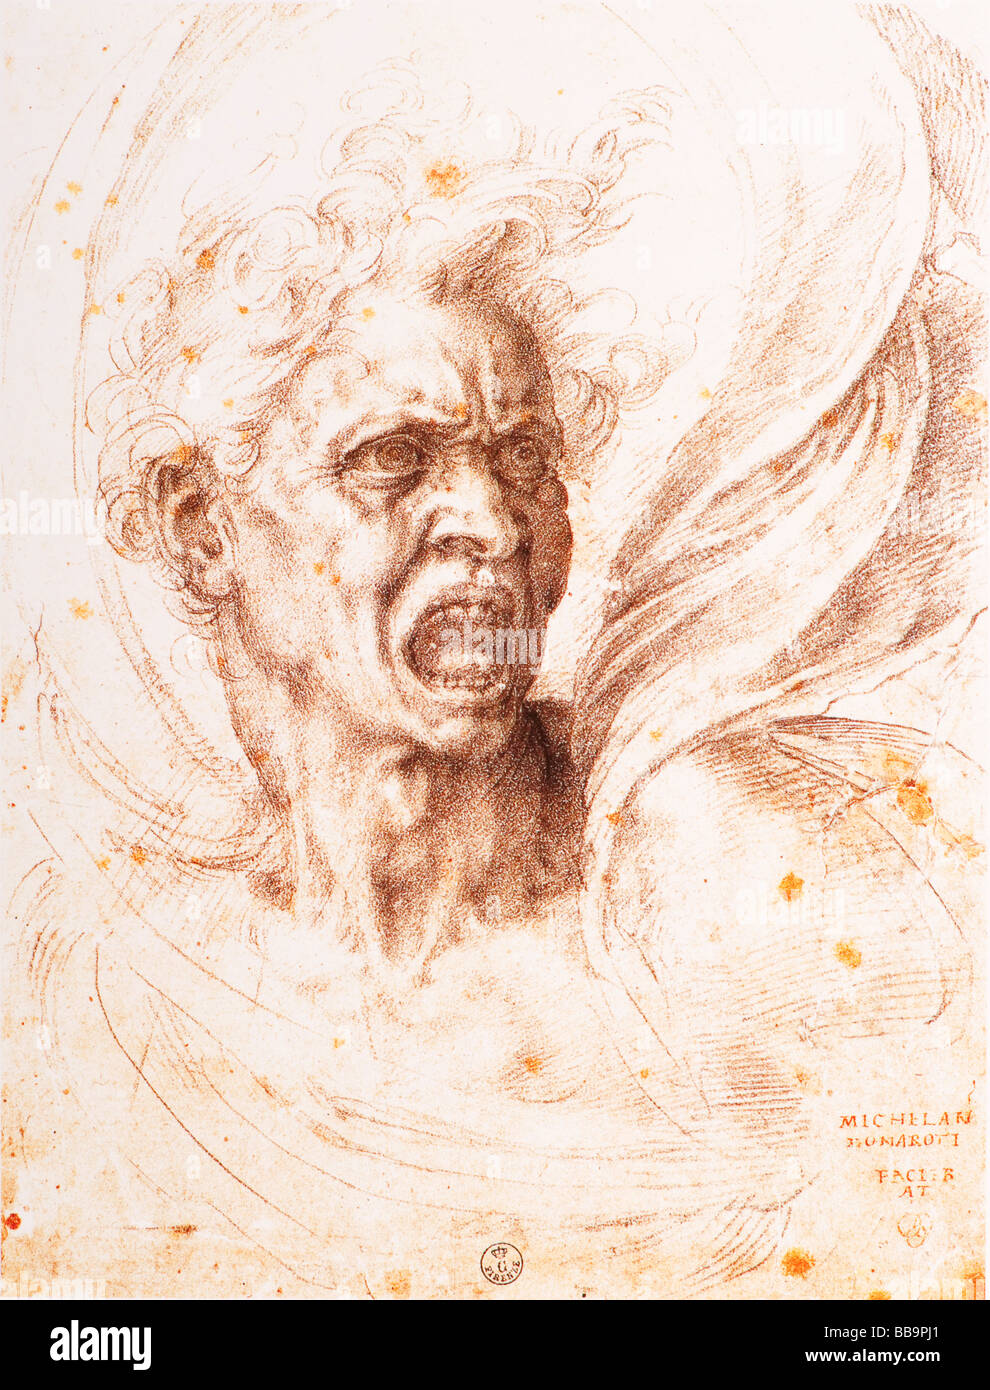 El maldito alma por Michelangelo 1525 tinta negra Foto de stock